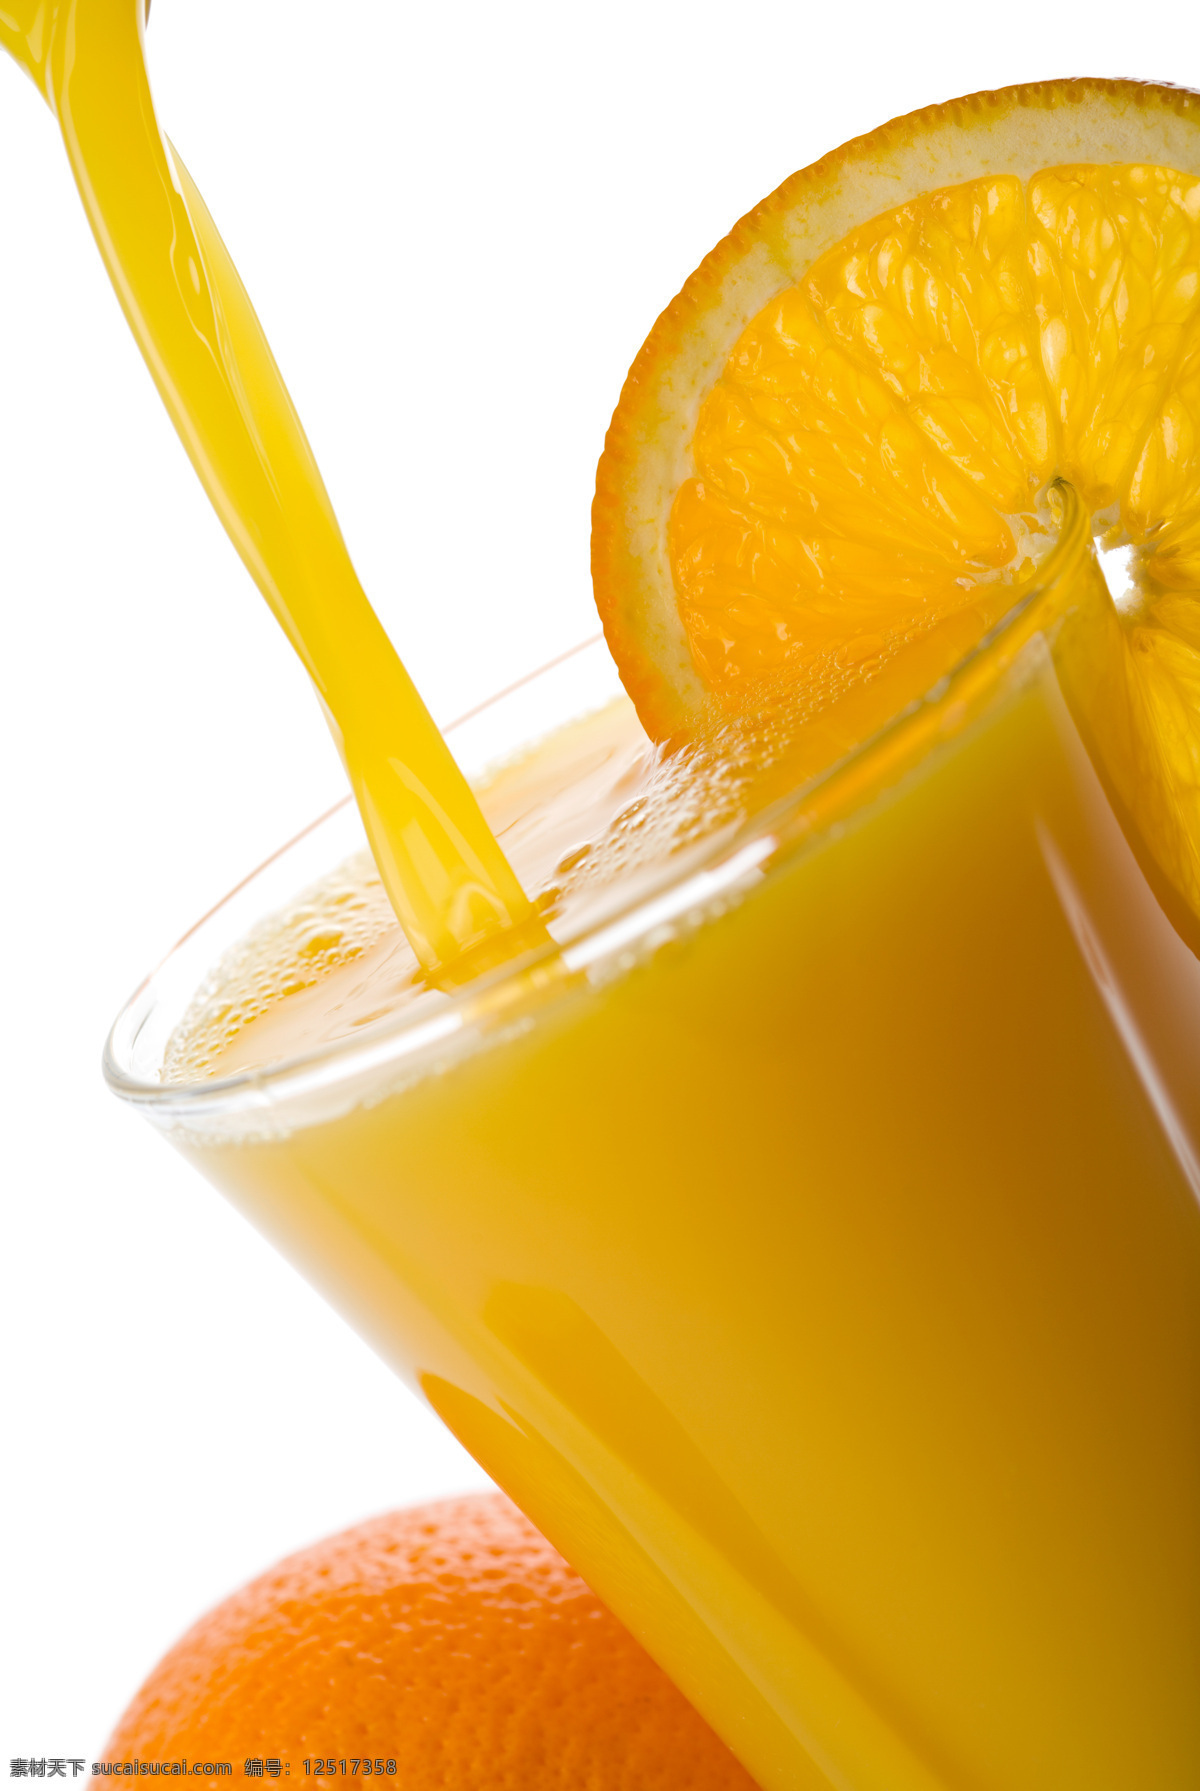 橙汁 鲜榨果汁 现榨果汁 水果 蔬菜汁 果汁 饮料 饮品 餐饮美食 饮料酒水